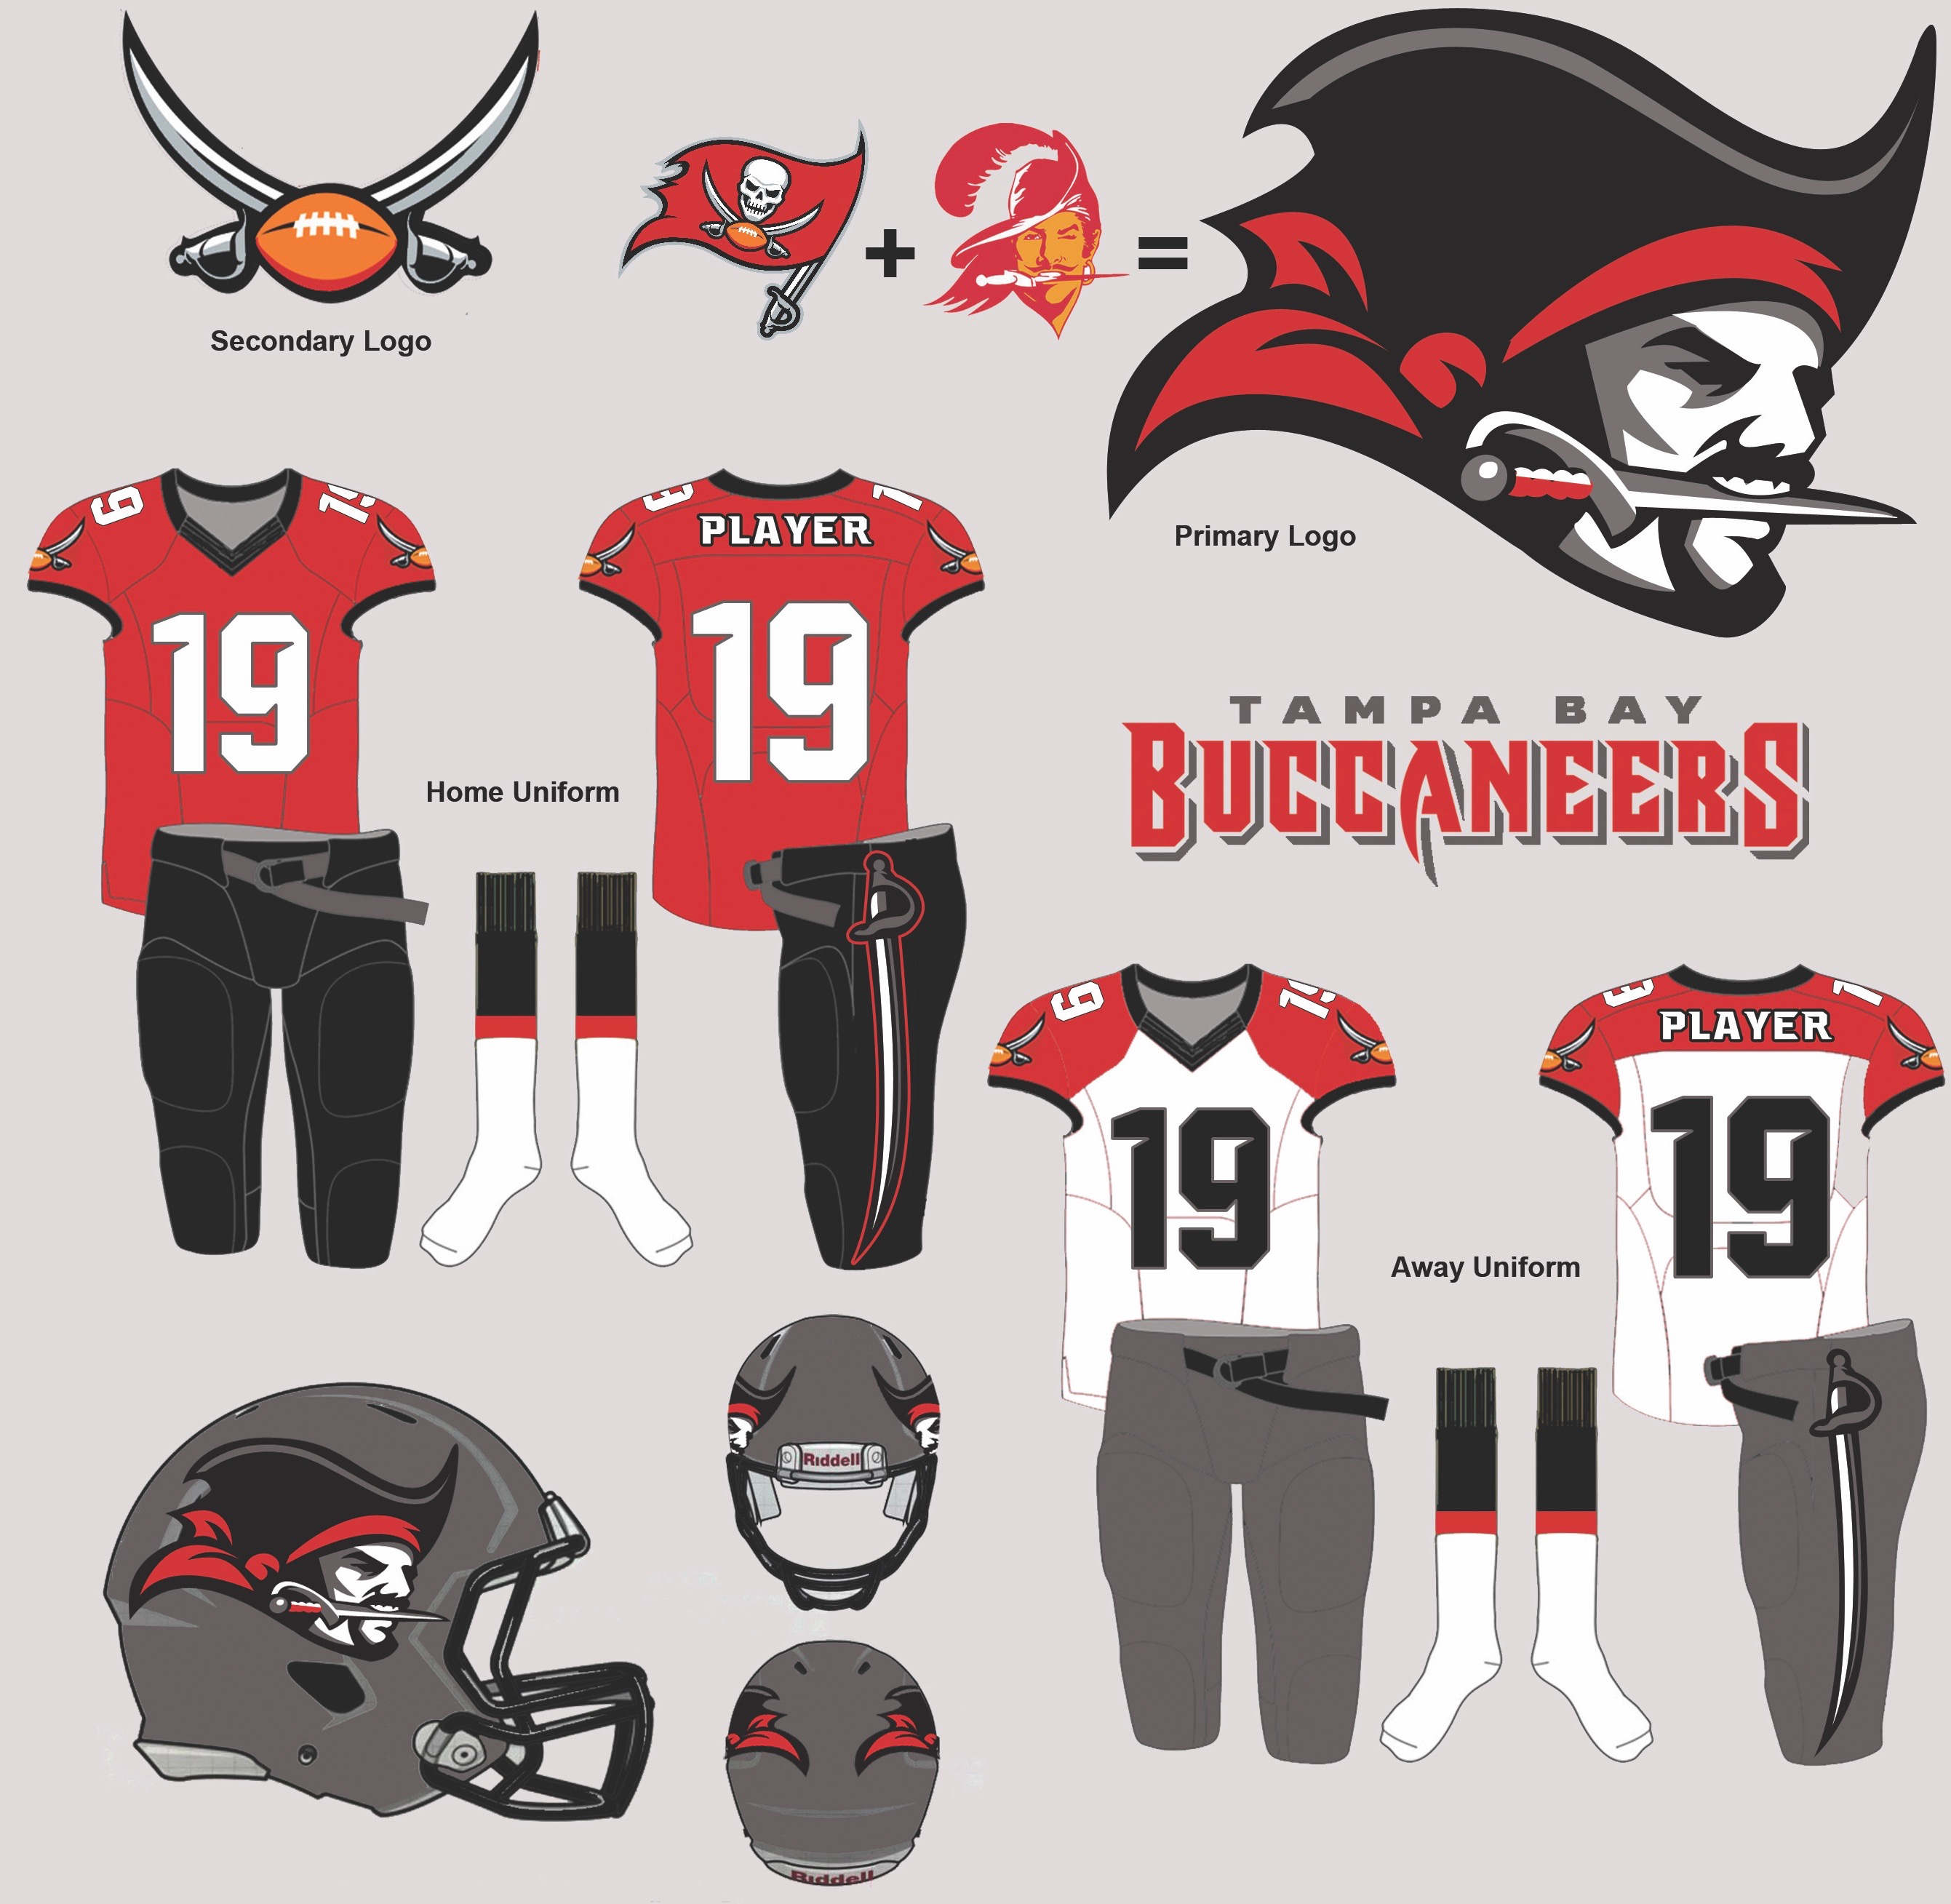 new buccaneers jersey